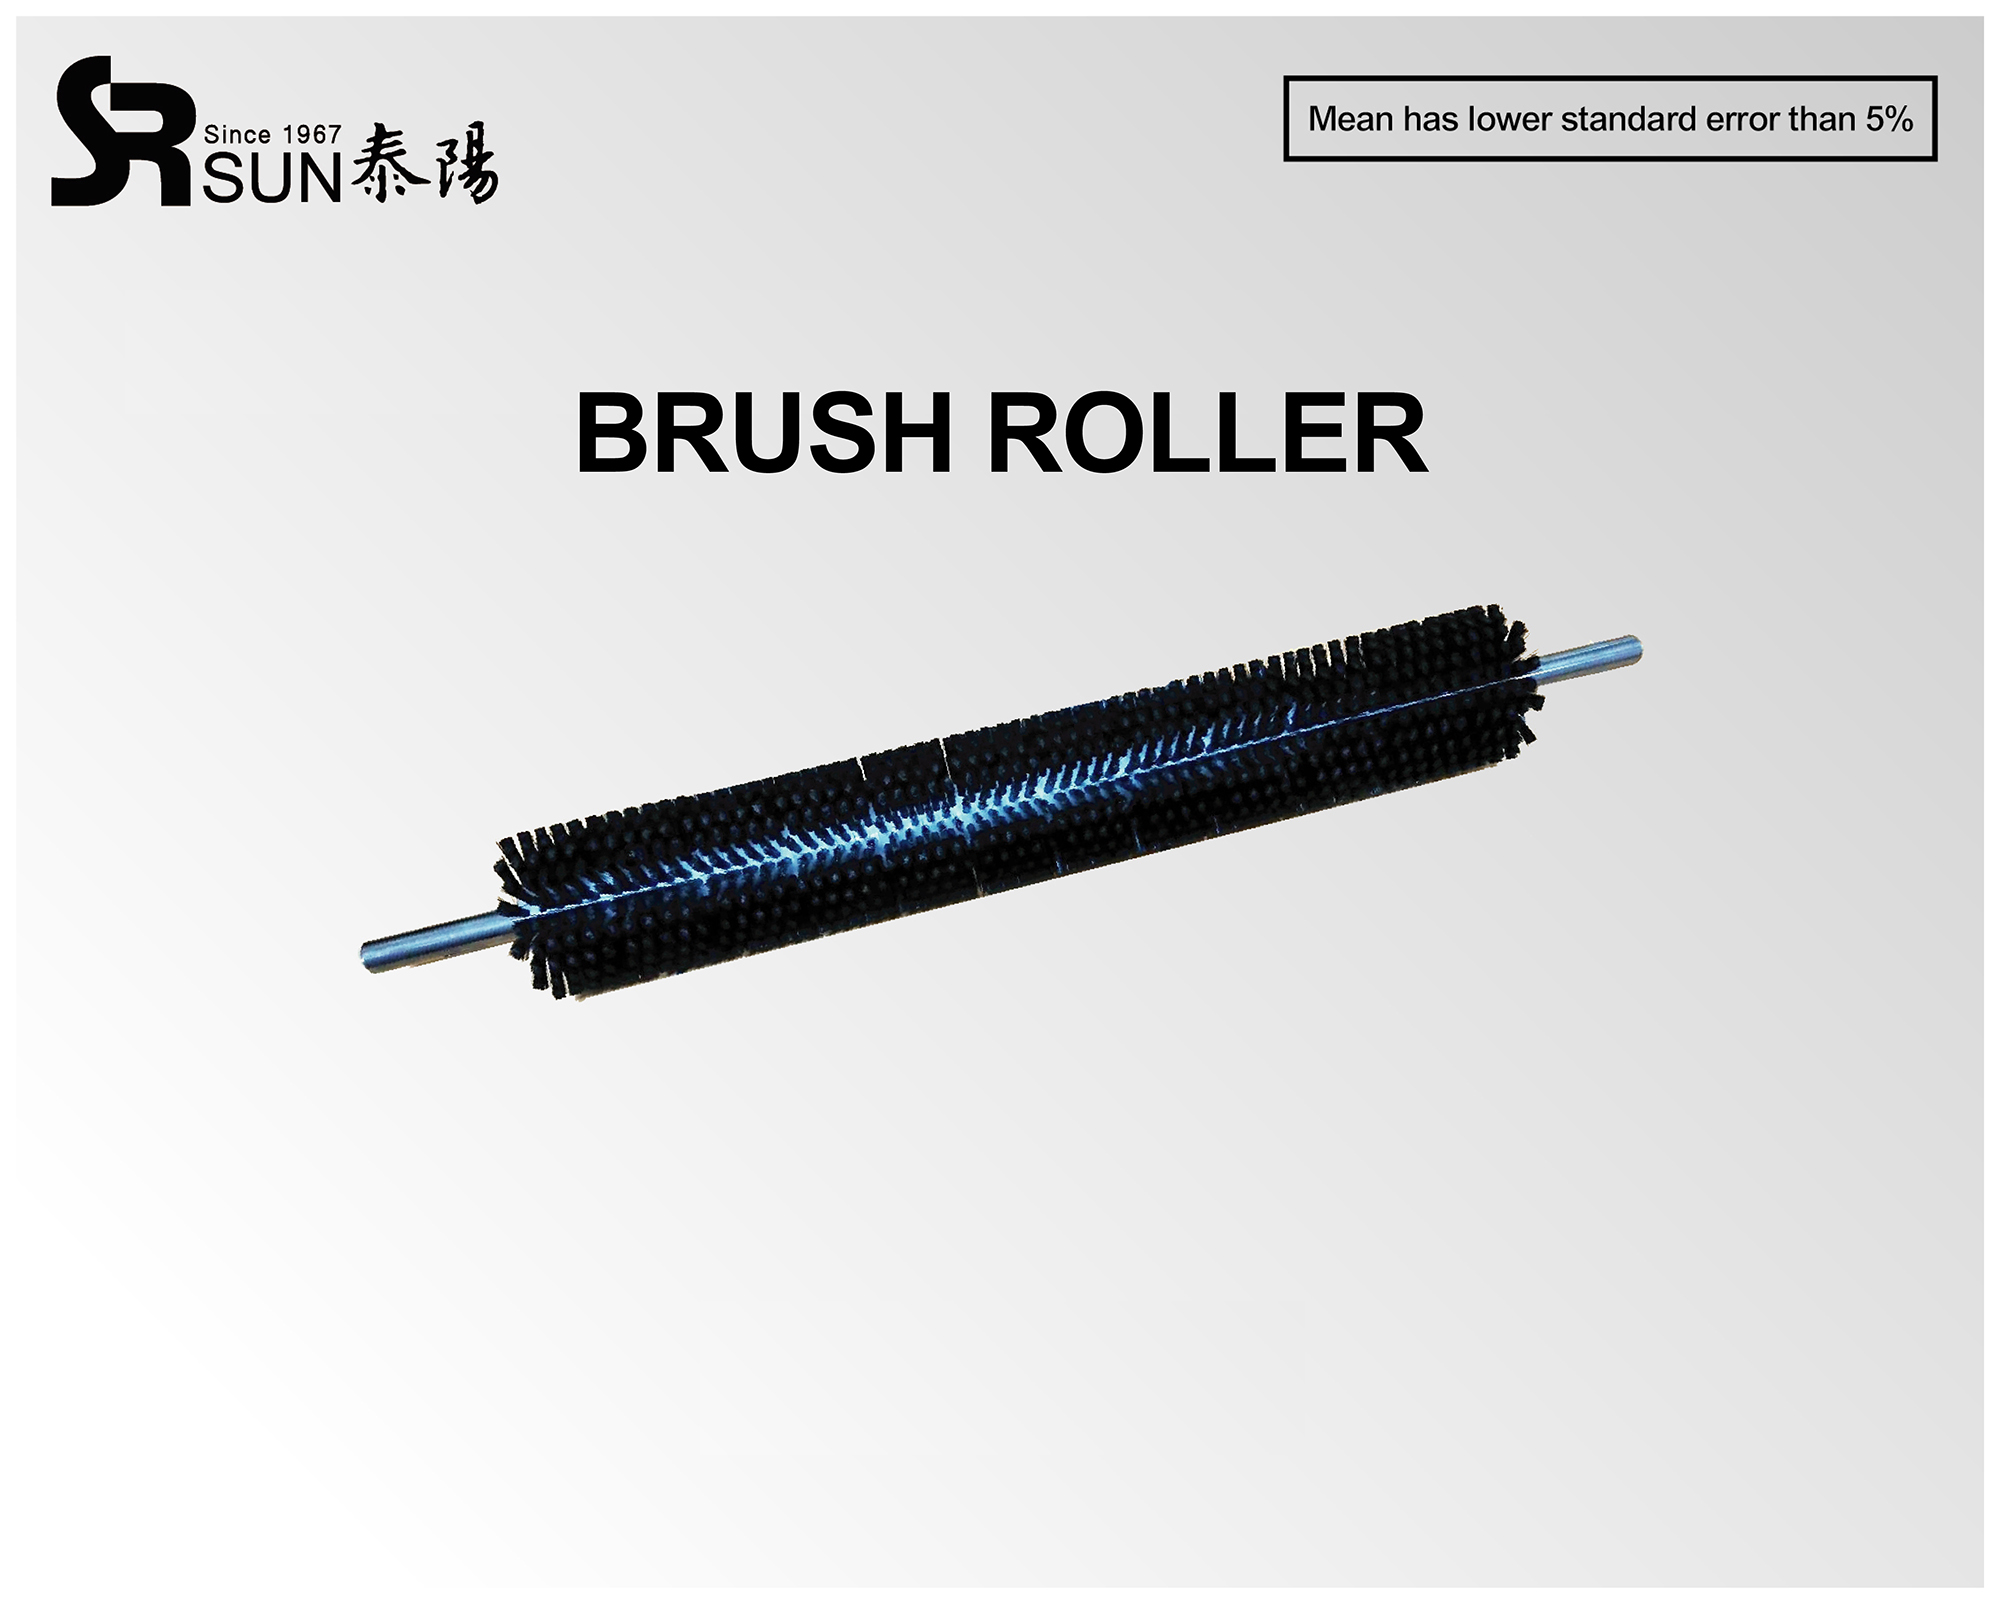 Brush roller